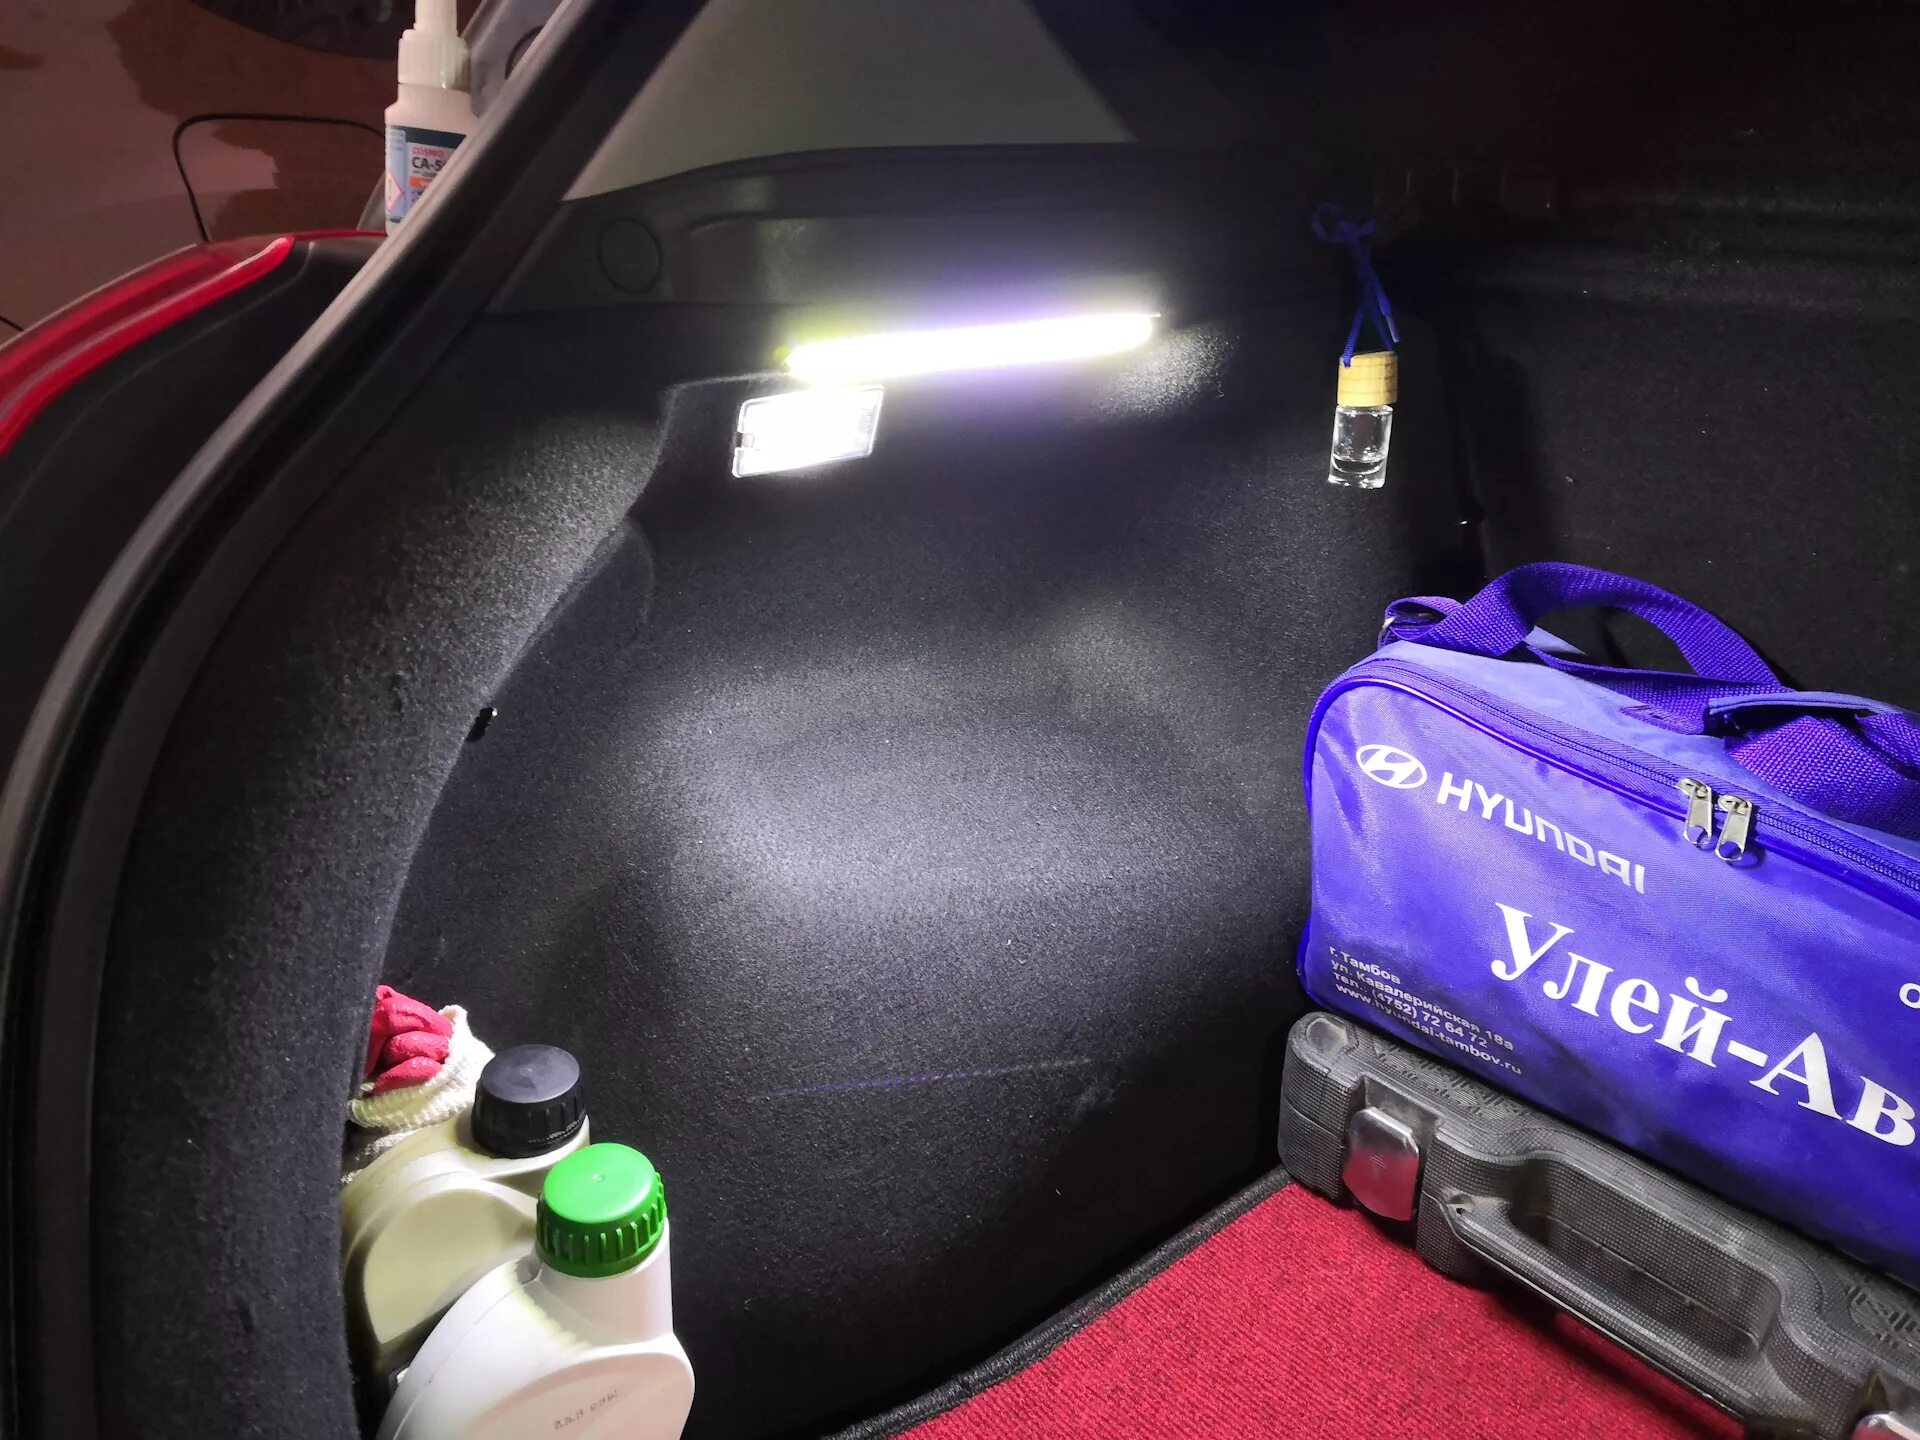 Скрипы киа сид. Подсветка багажника Киа СИД JD SW. Подсветка багажника Kia Ceed. Nissan Leaf подсветка багажника. Подсветка багажника кия СИД.